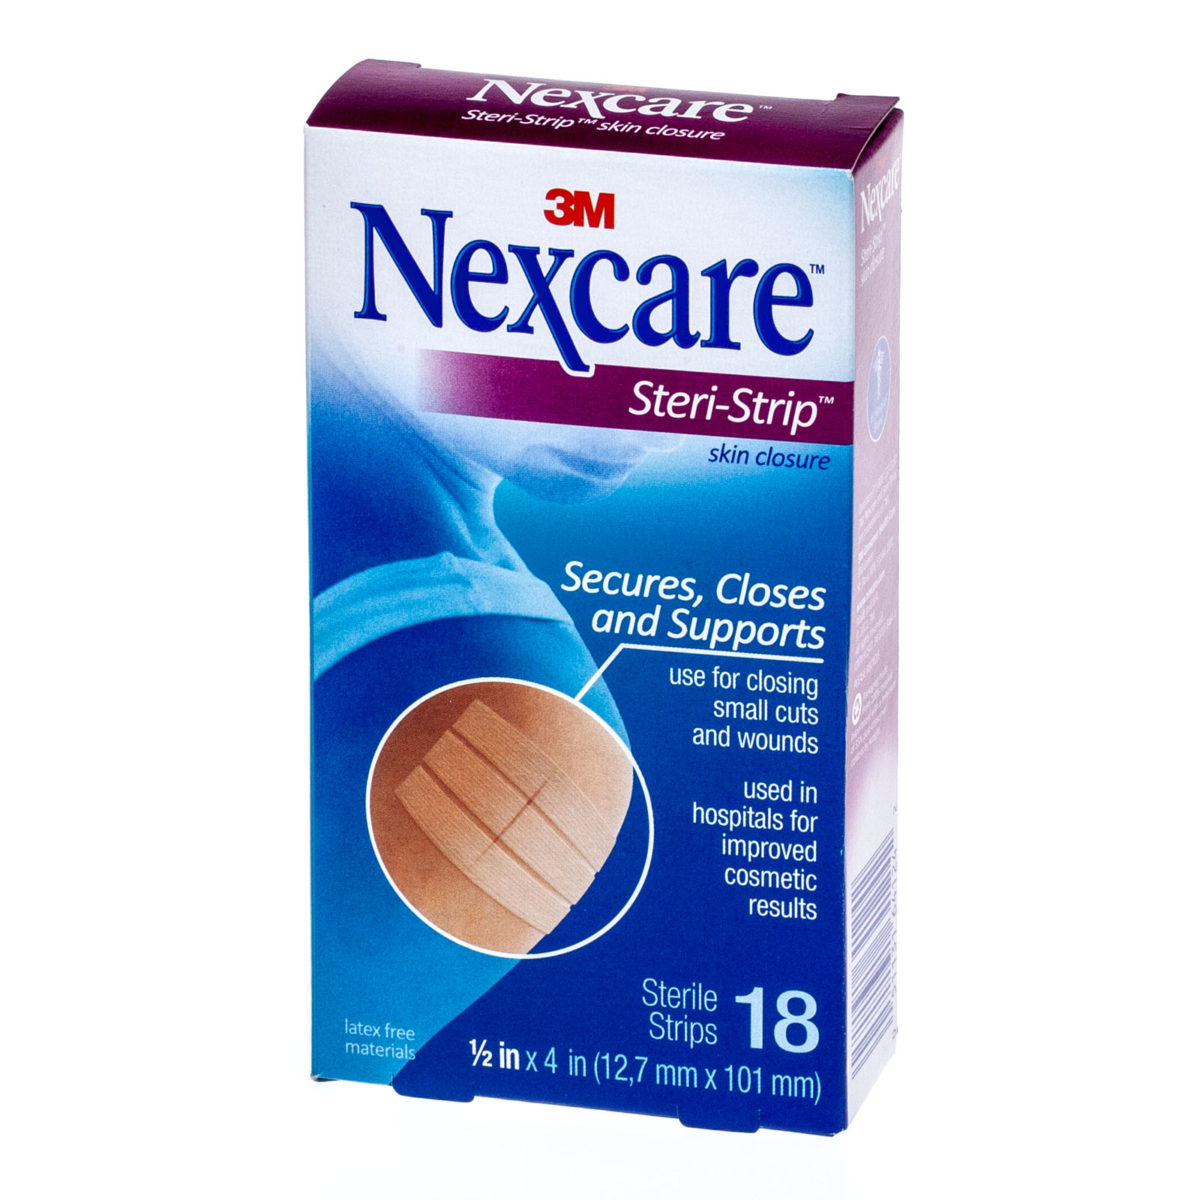 3m Nexcare Steri Strip Skin Closure 1 2 In X 4 In Box Of 18 First Aid